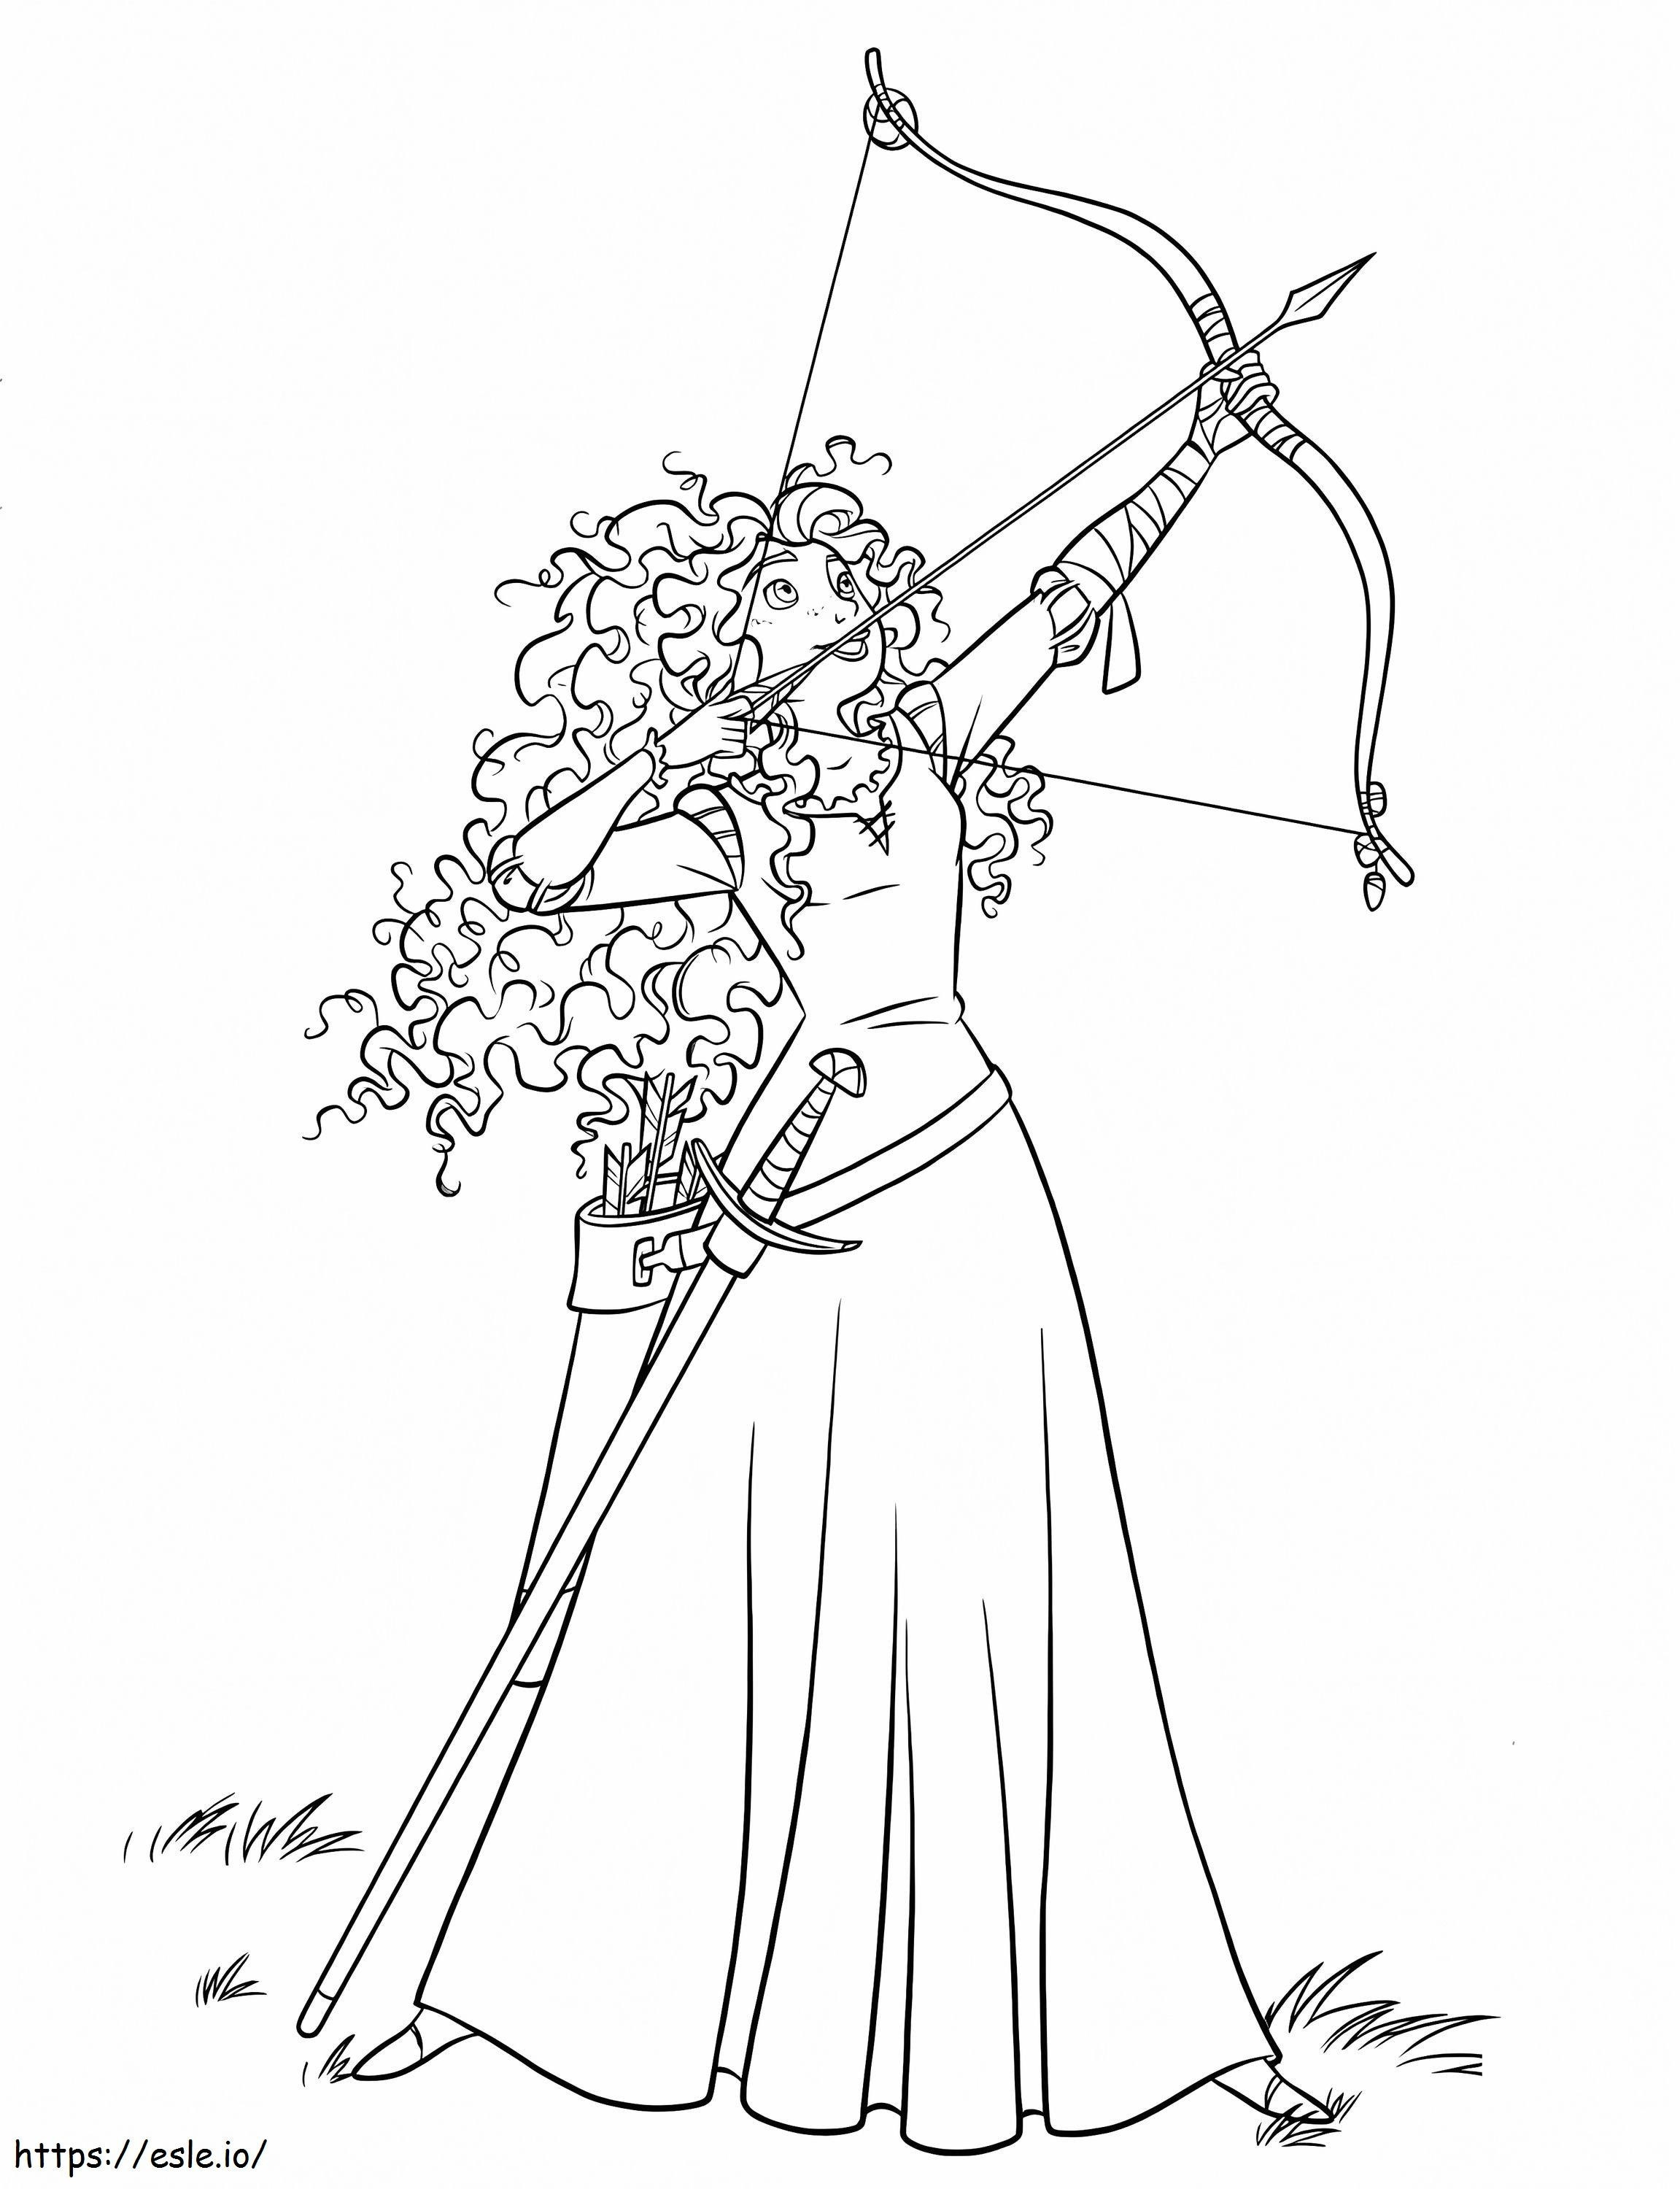 Prințesa Merida cu arc și săgeată 2 de colorat